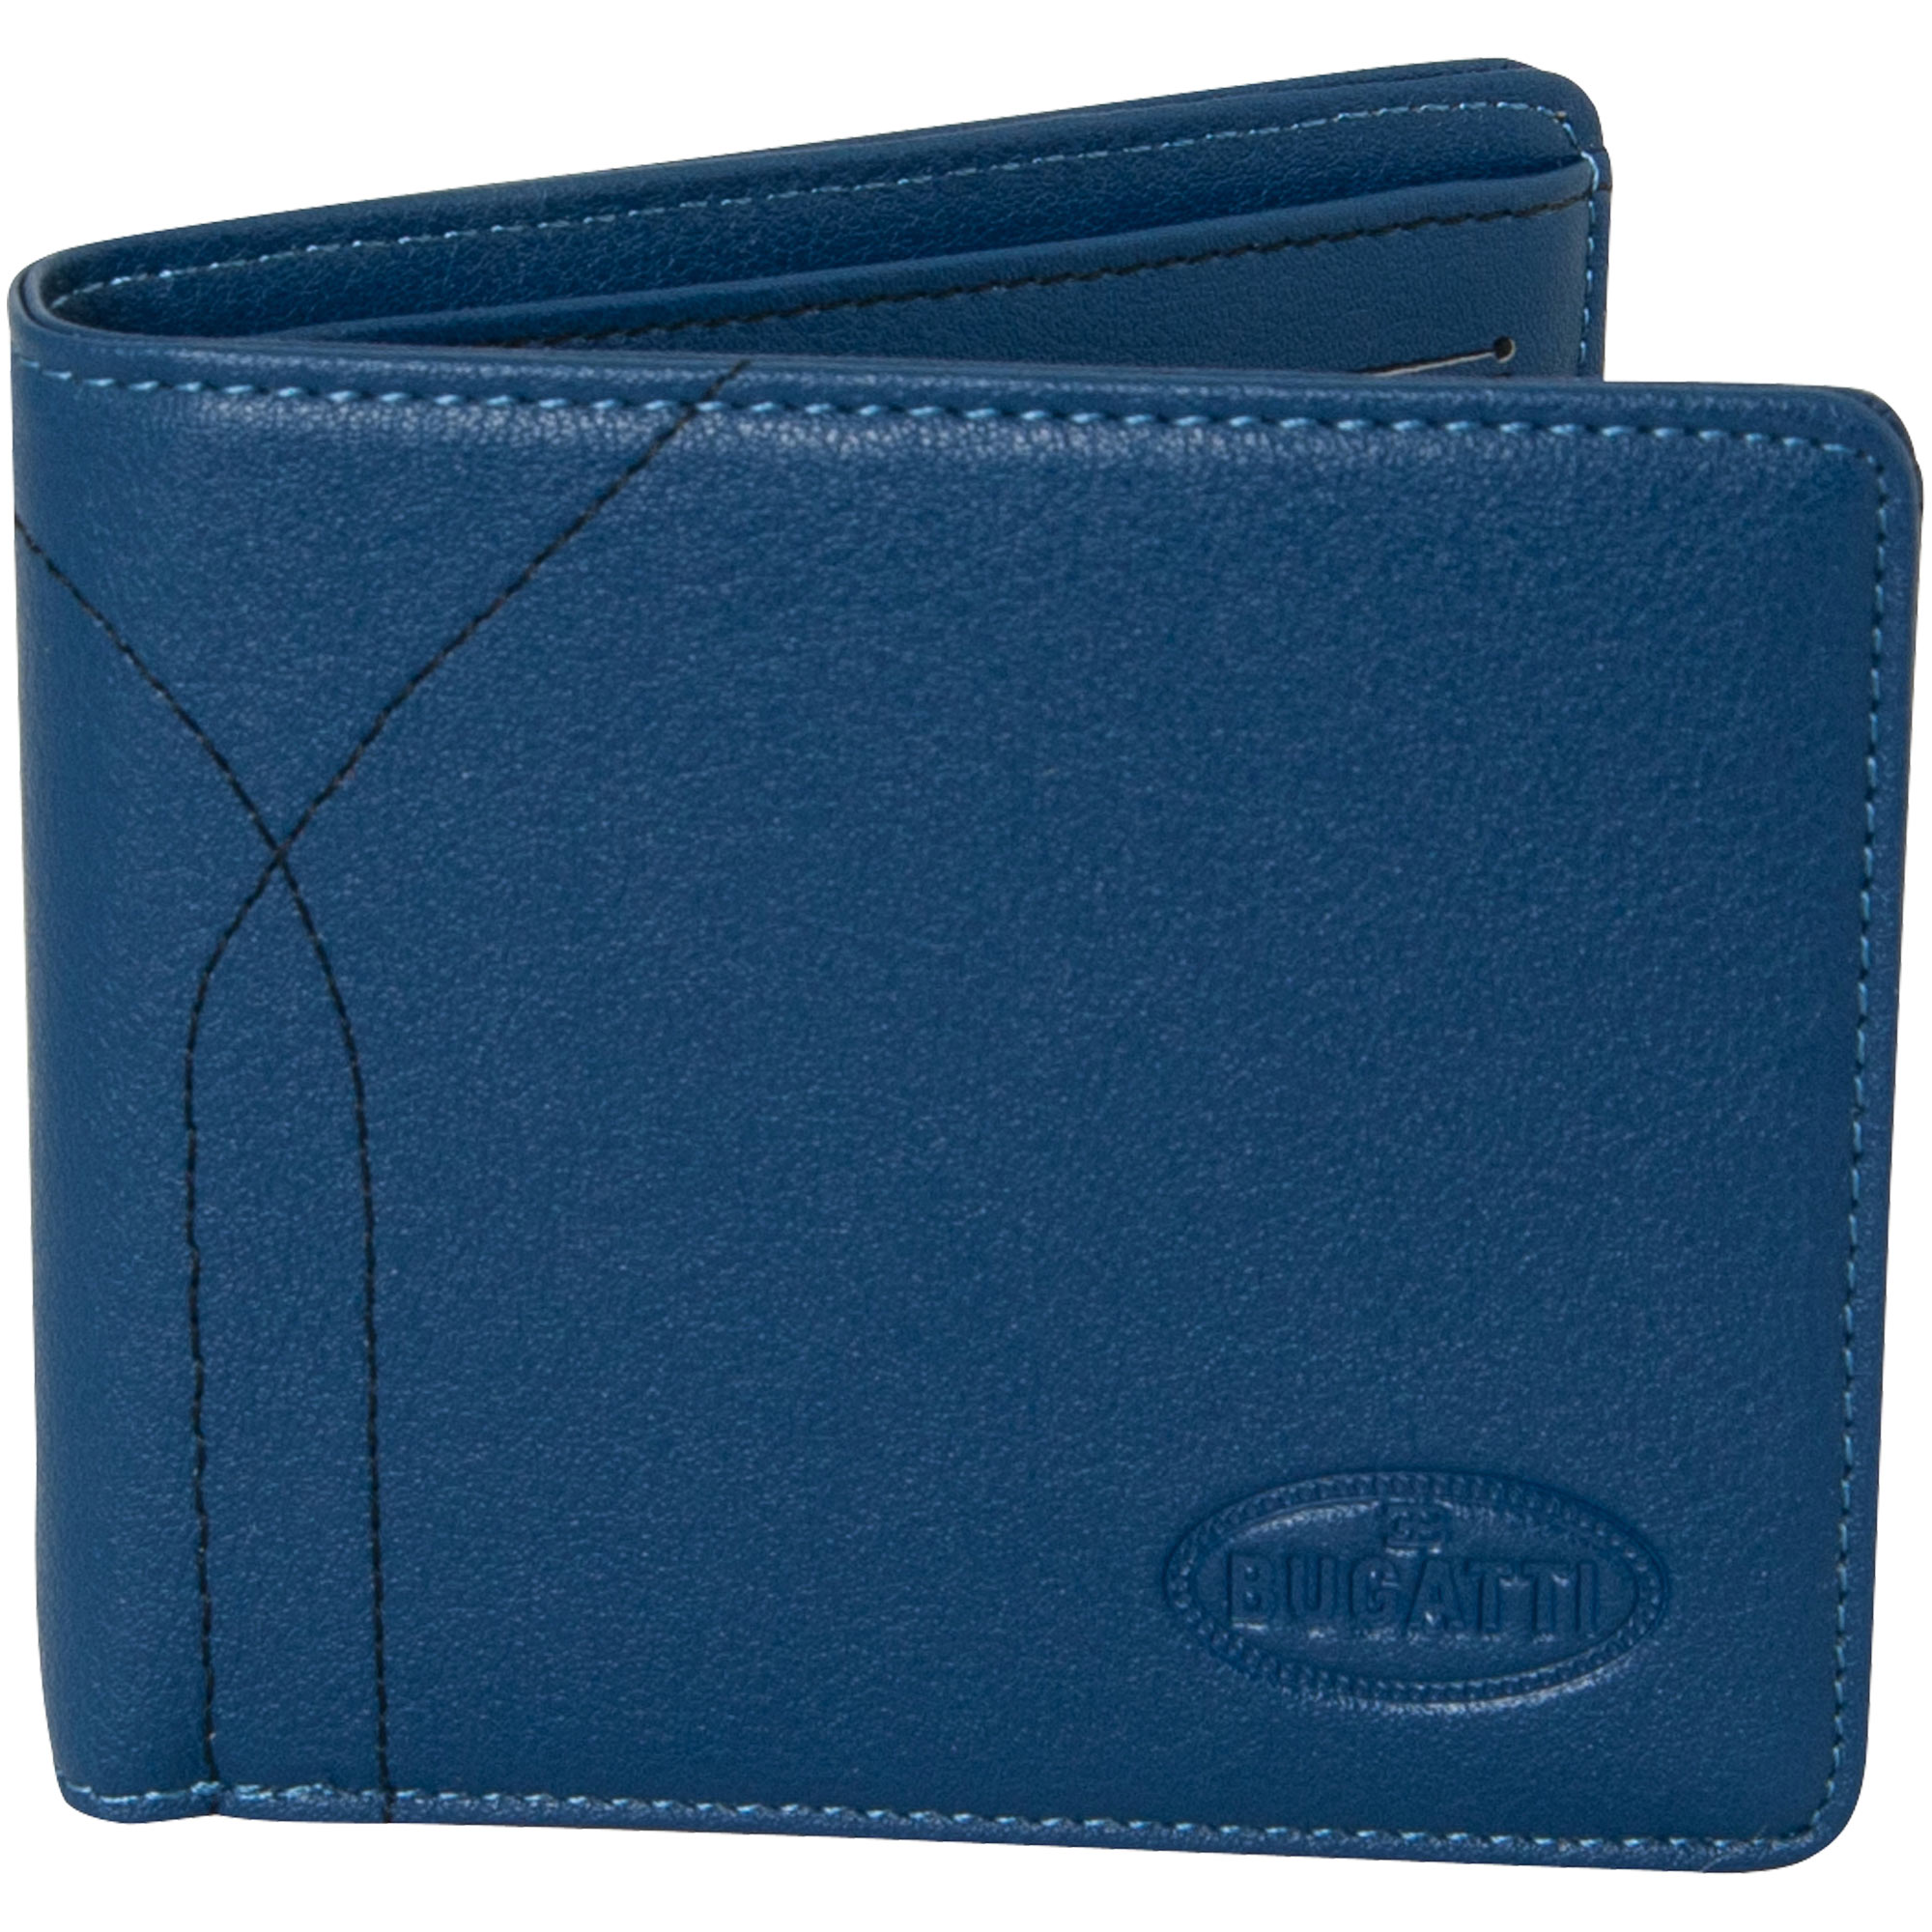 Bugatti wallet "Macaron" - blue